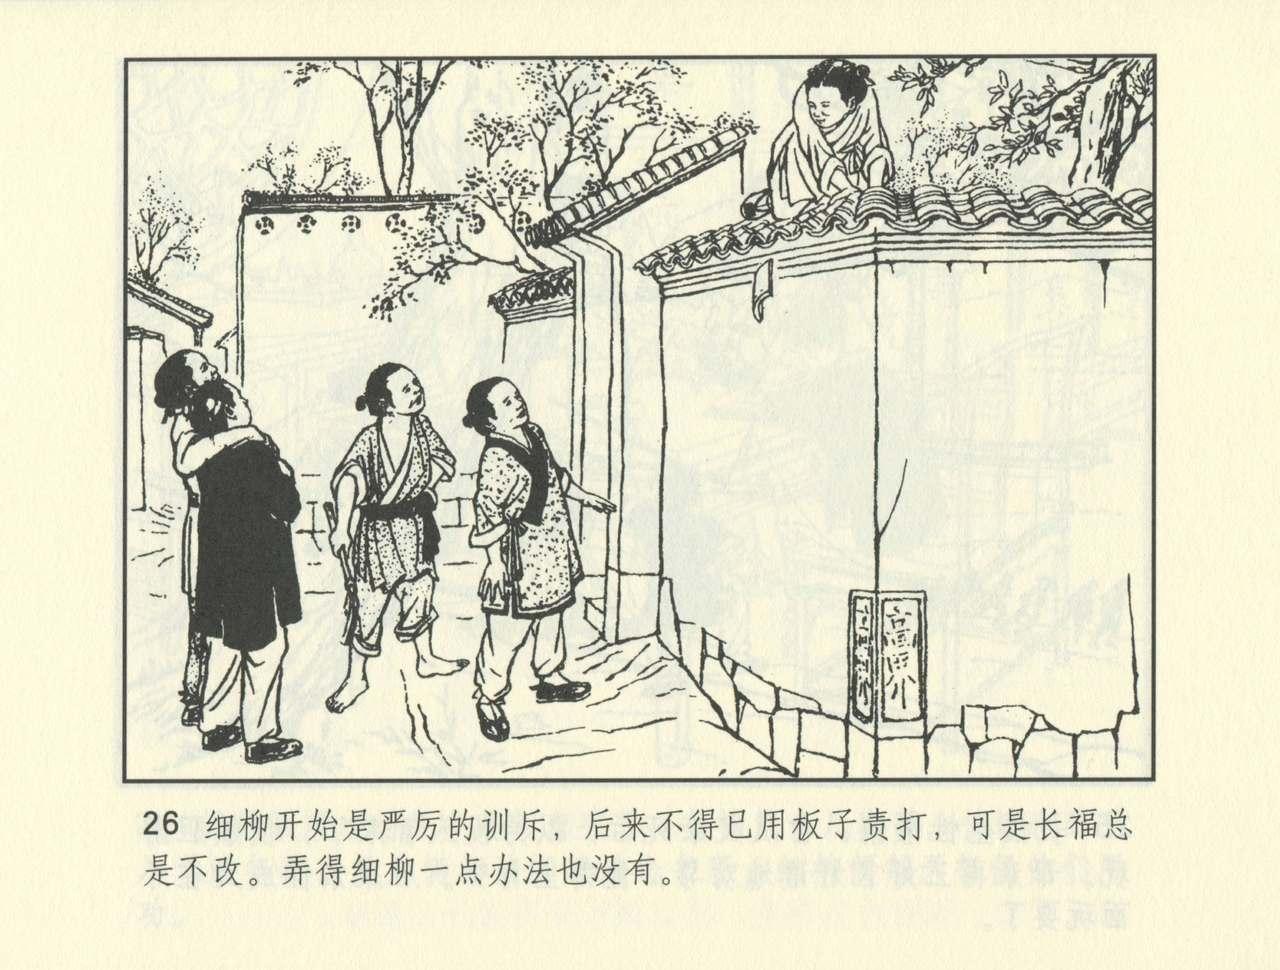 聊斋志异 张玮等绘 天津人民美术出版社 卷二十一 ~ 三十 498